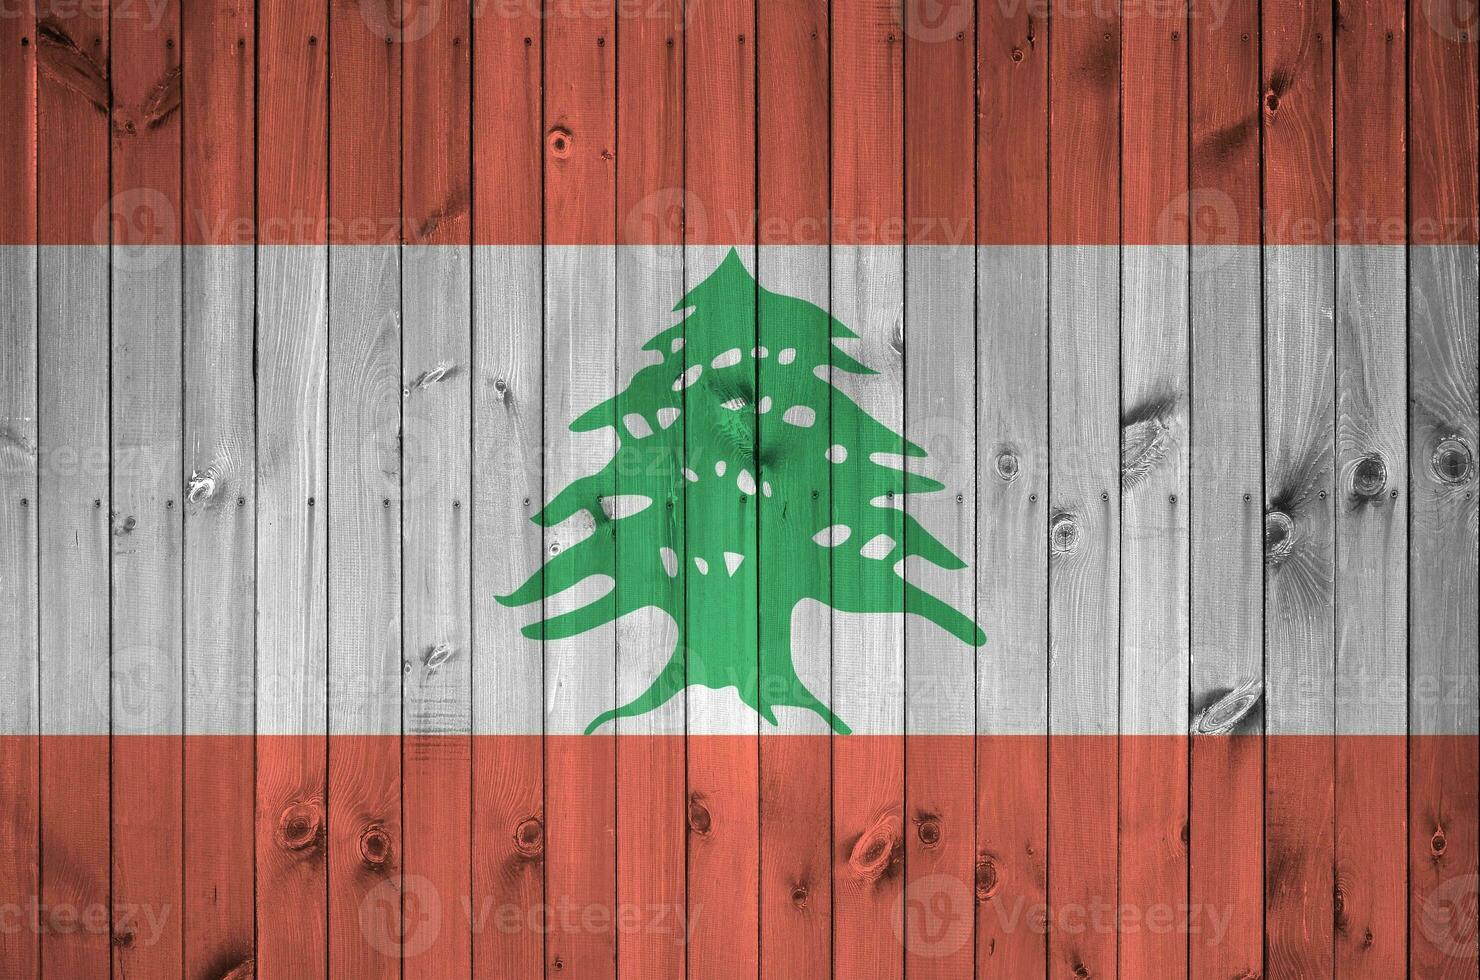 libanon flagga avbildad i ljus måla färger på gammal trä- vägg. texturerad baner på grov bakgrund foto